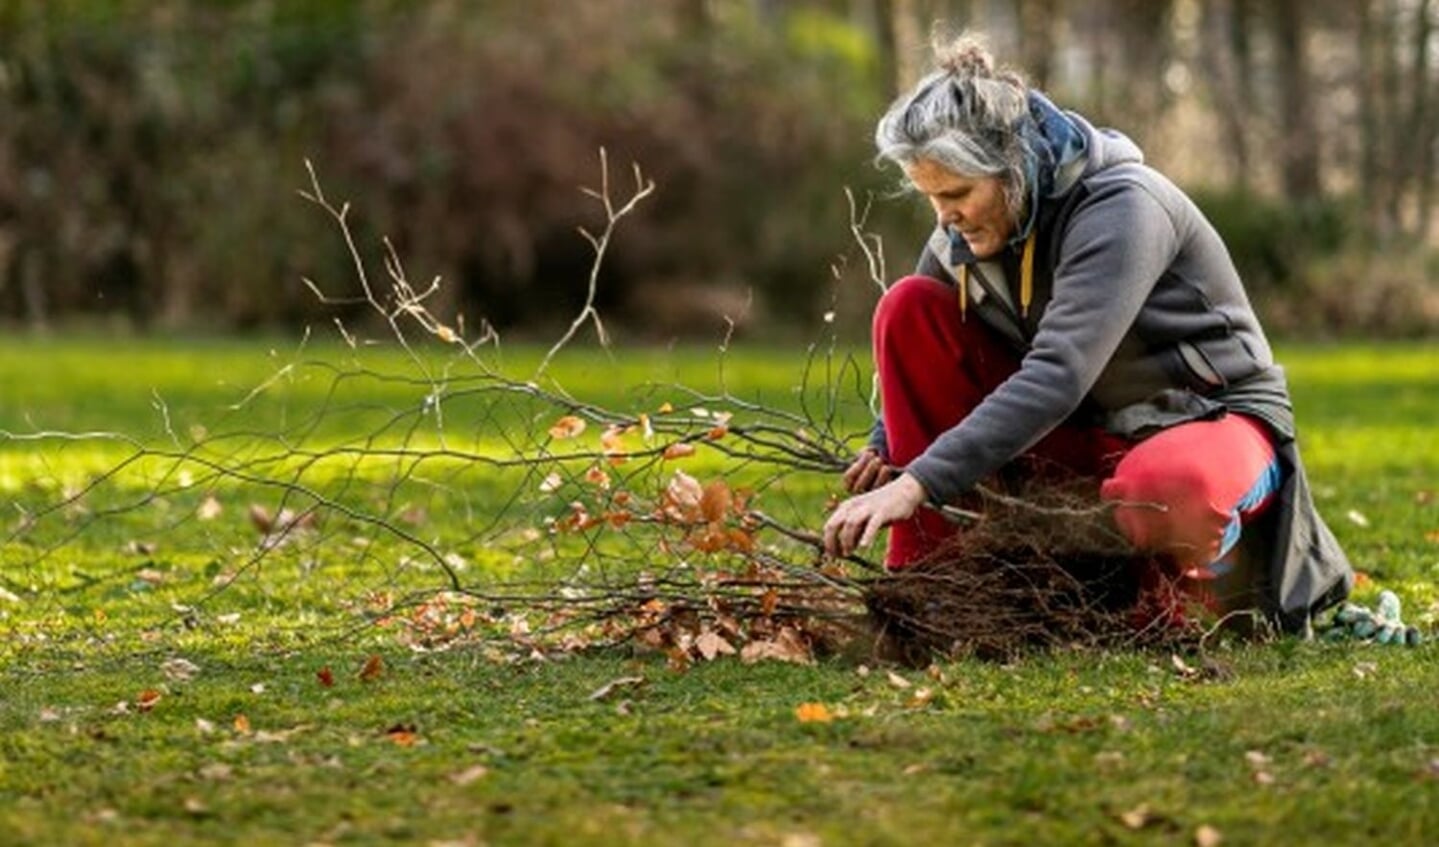 Meer Bomen Nu wil dit jaar 1 miljoen bomen in Nederland planten. Hiervoor kunt u zaailingen en stekken inleveren op 27 november.